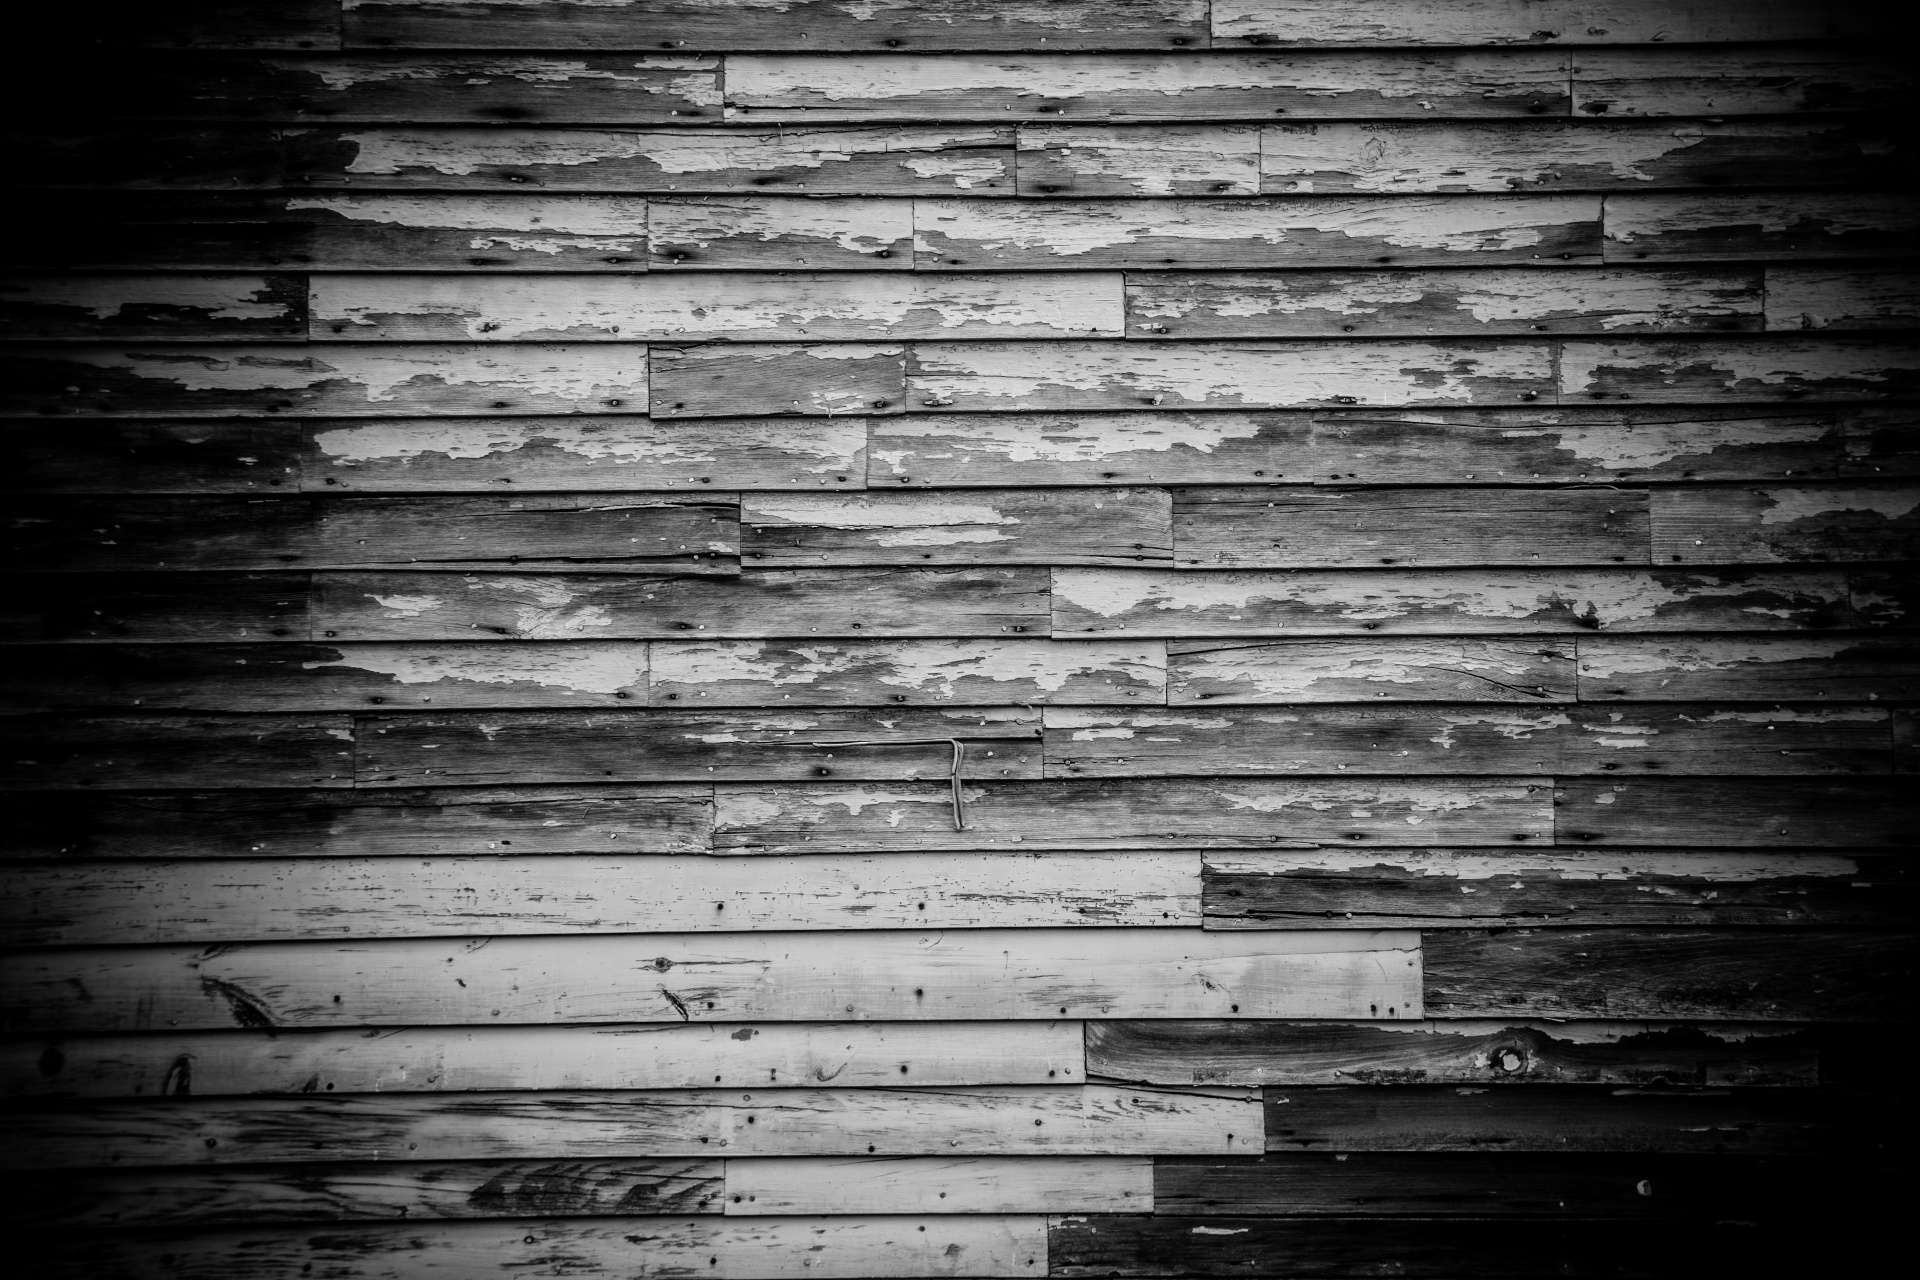 Grunge wooden planks background texture